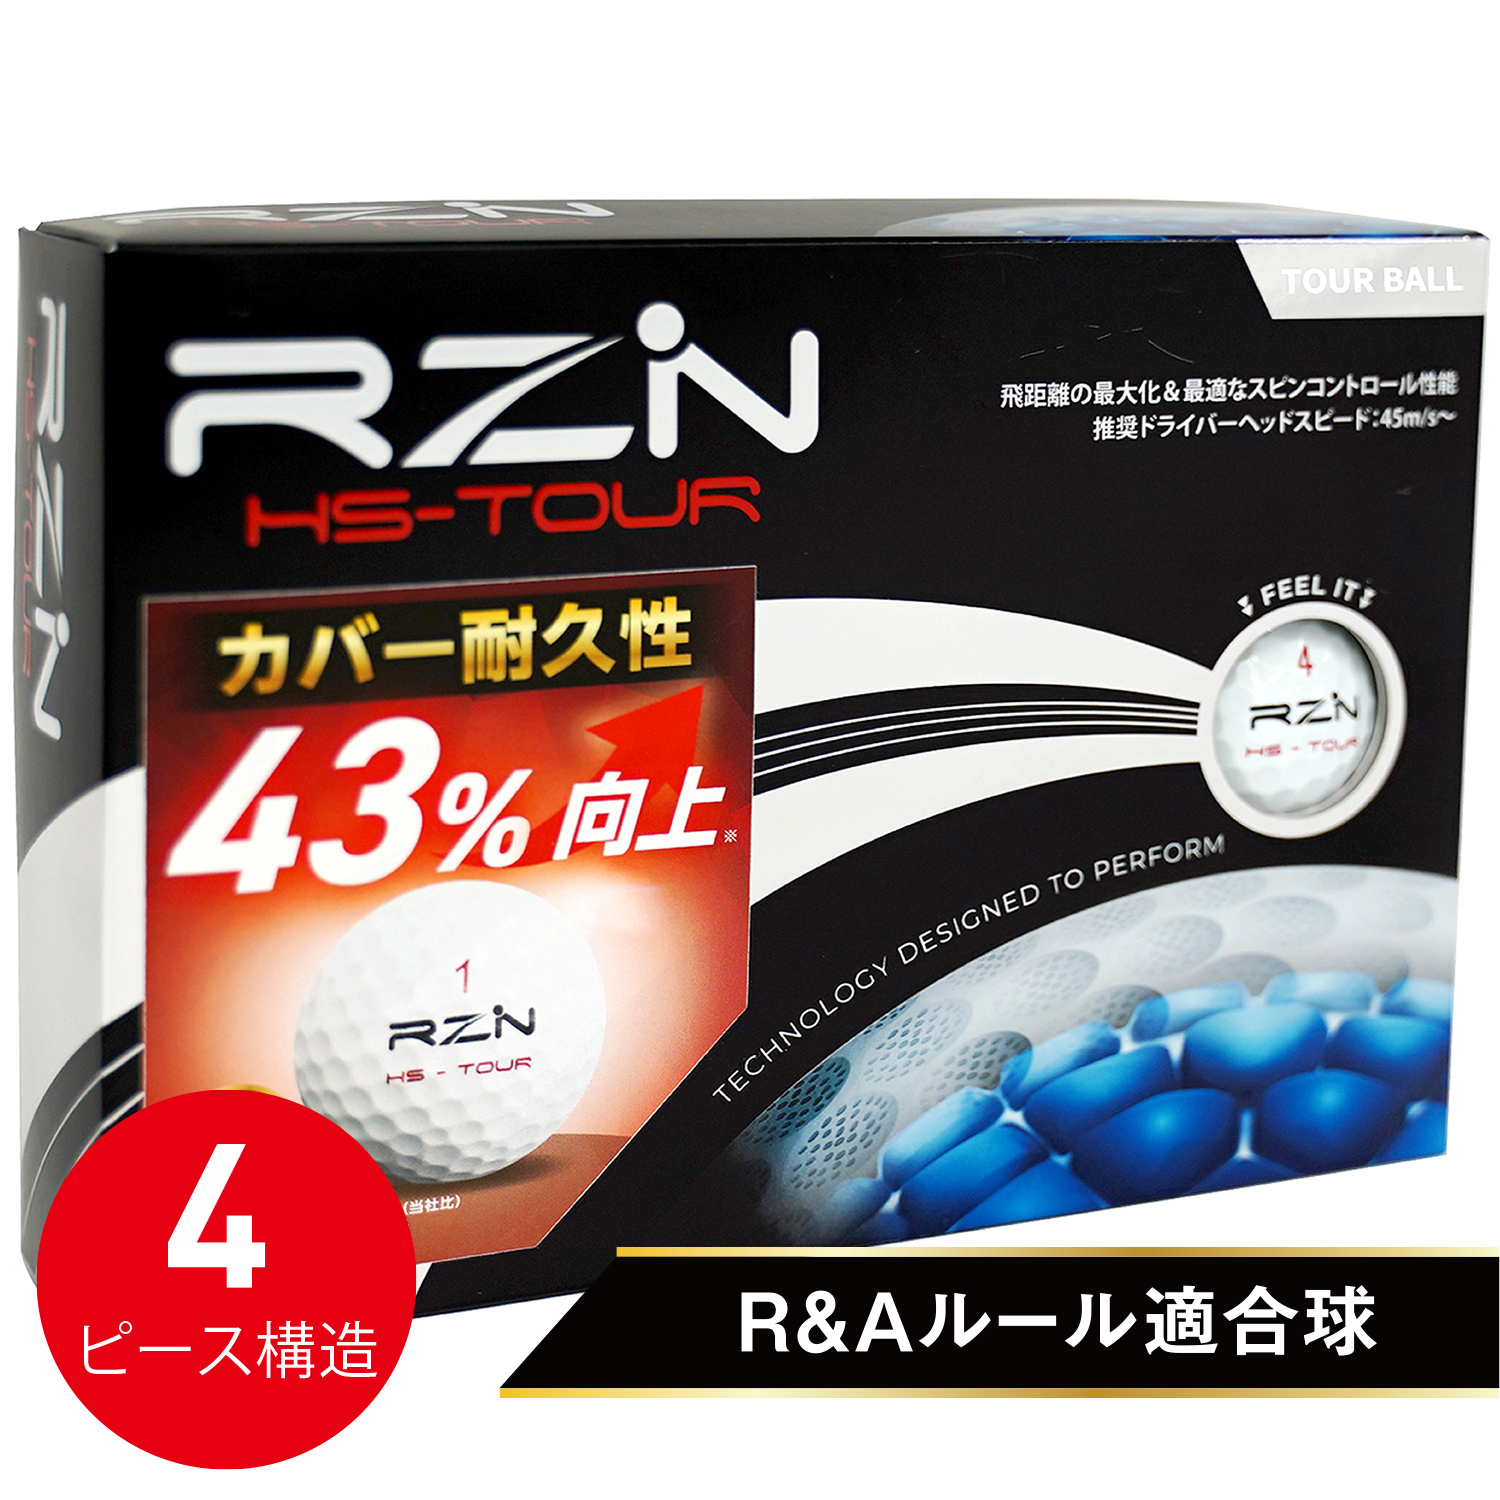 RZN HS-TOUR V2 (1ダース)の写真